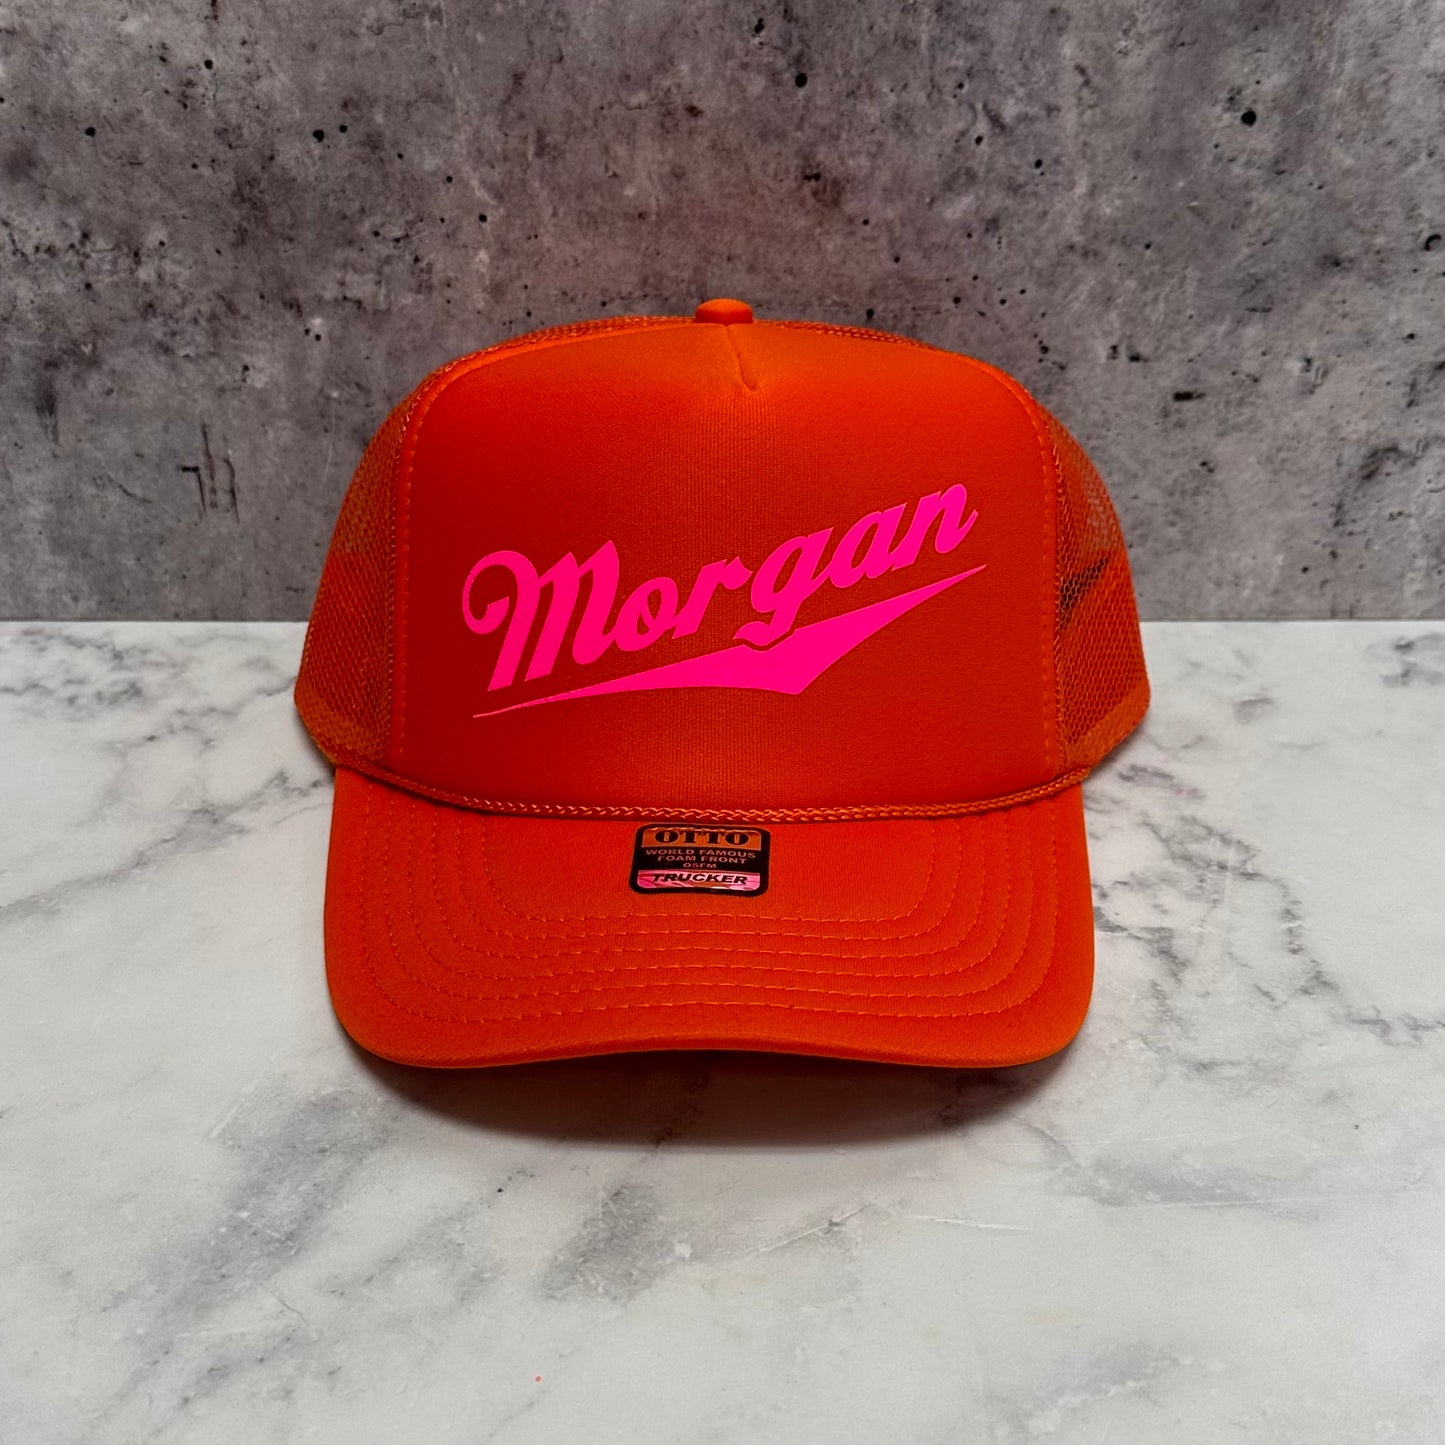 Morgan Miller Lite Trucker Hat